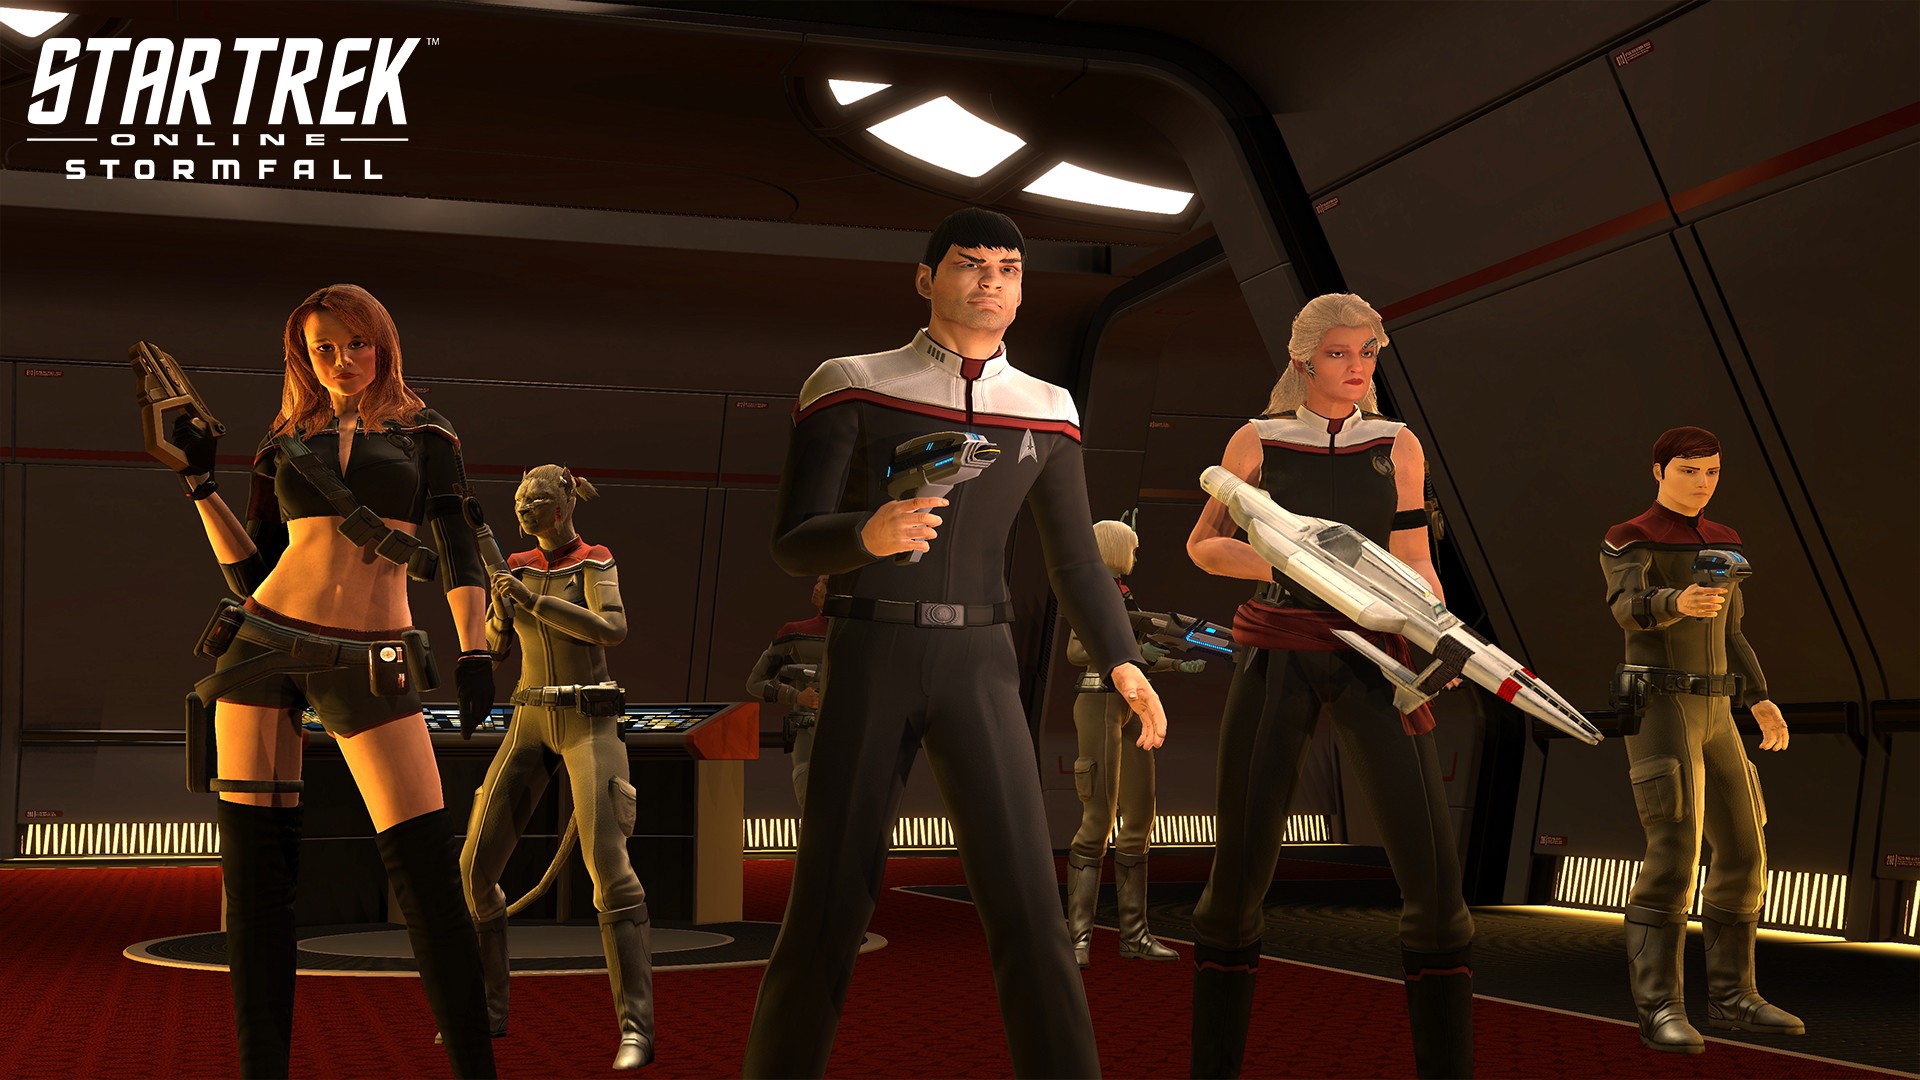 Nicole de Boer Returning As Captain Ezri Dax For 'Star Trek Online: Both  Worlds' –